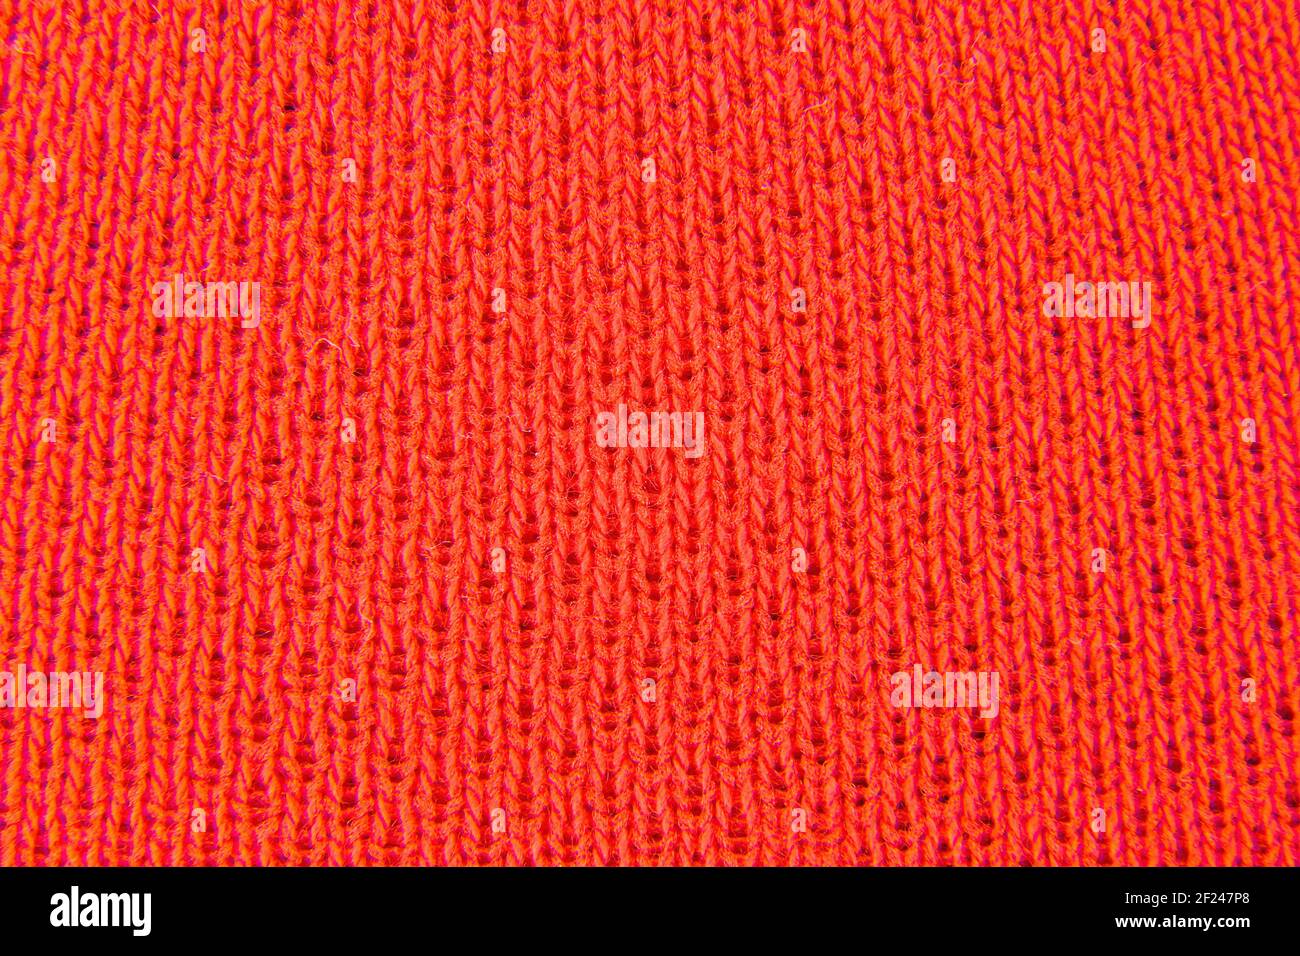 Image de l'arrière-plan en tissu rouge à aspect tricoté Banque D'Images